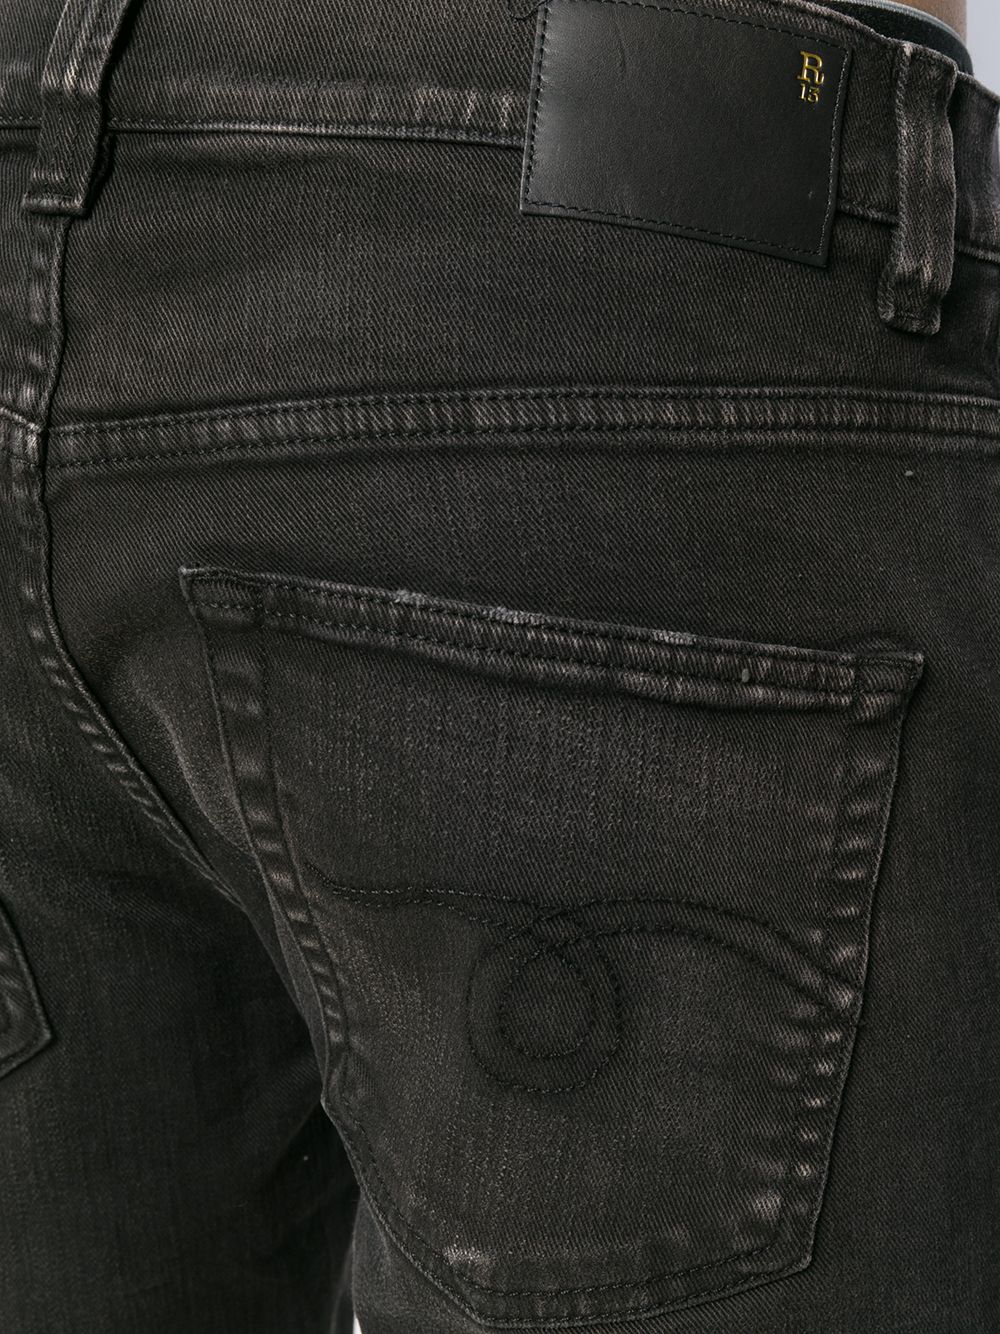 фото R13 джинсы скинни с эффектом потертости